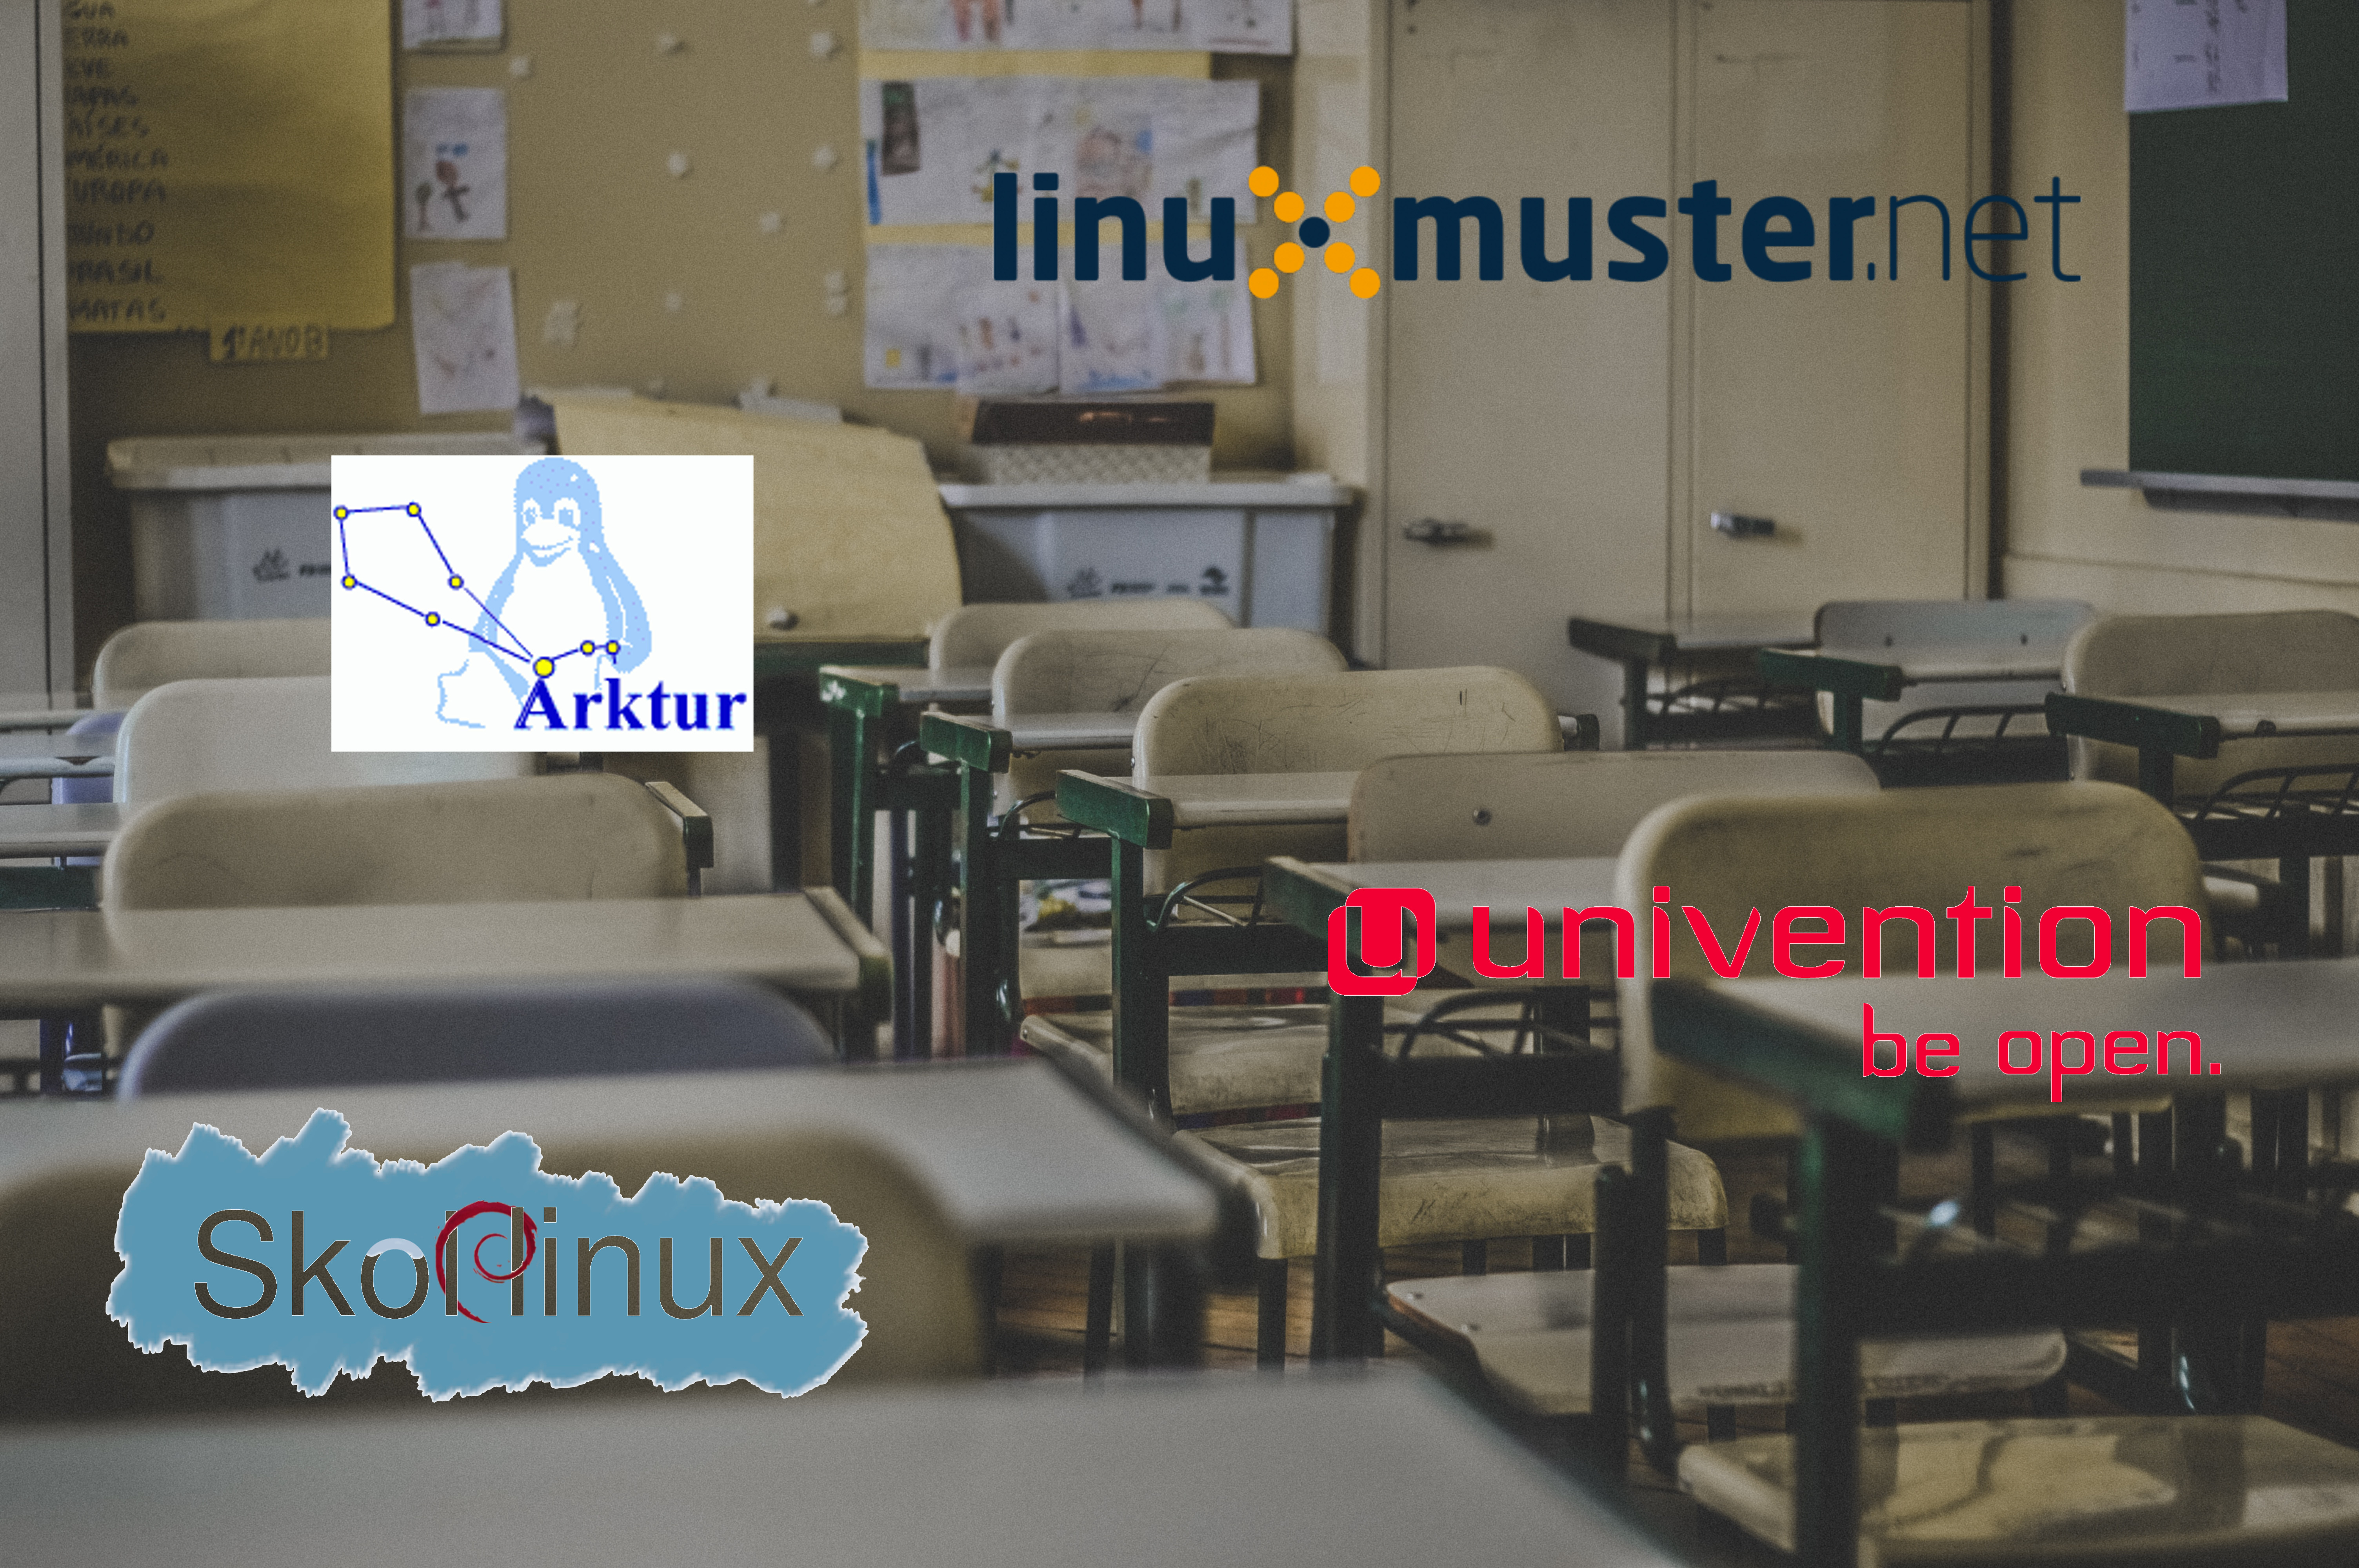 Linux Schulserver